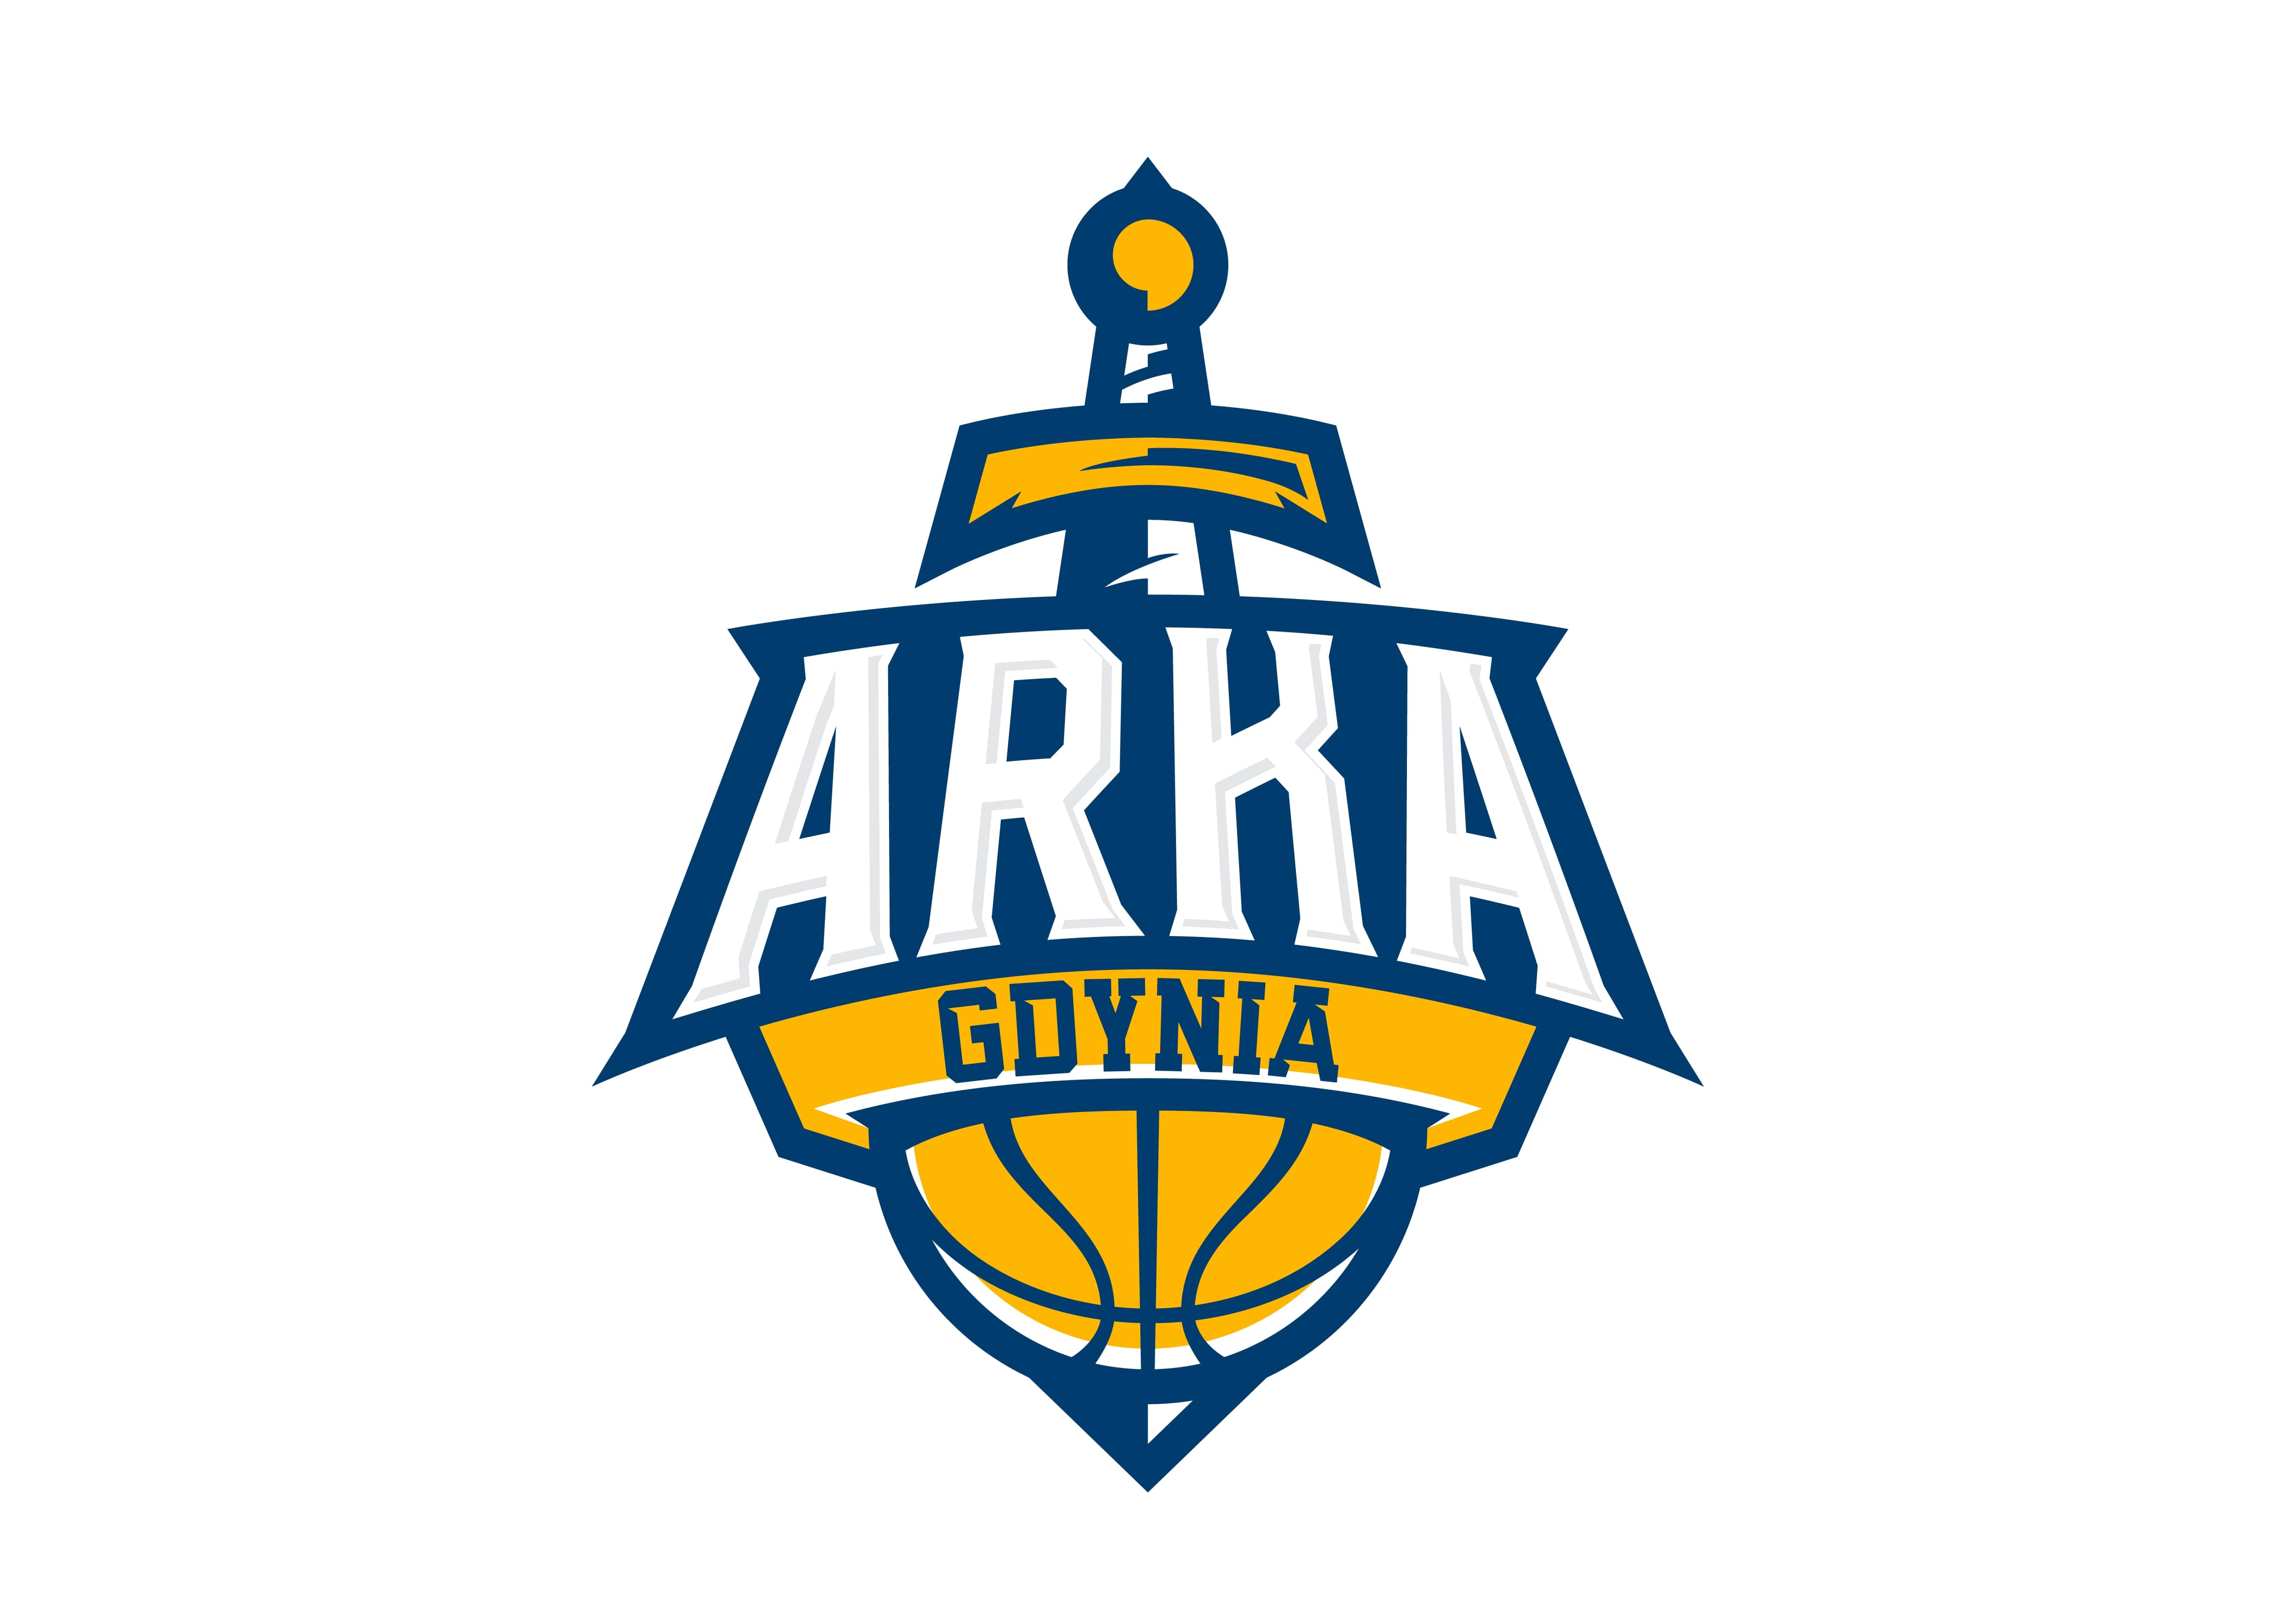 Arka Gdynia, nowe logo